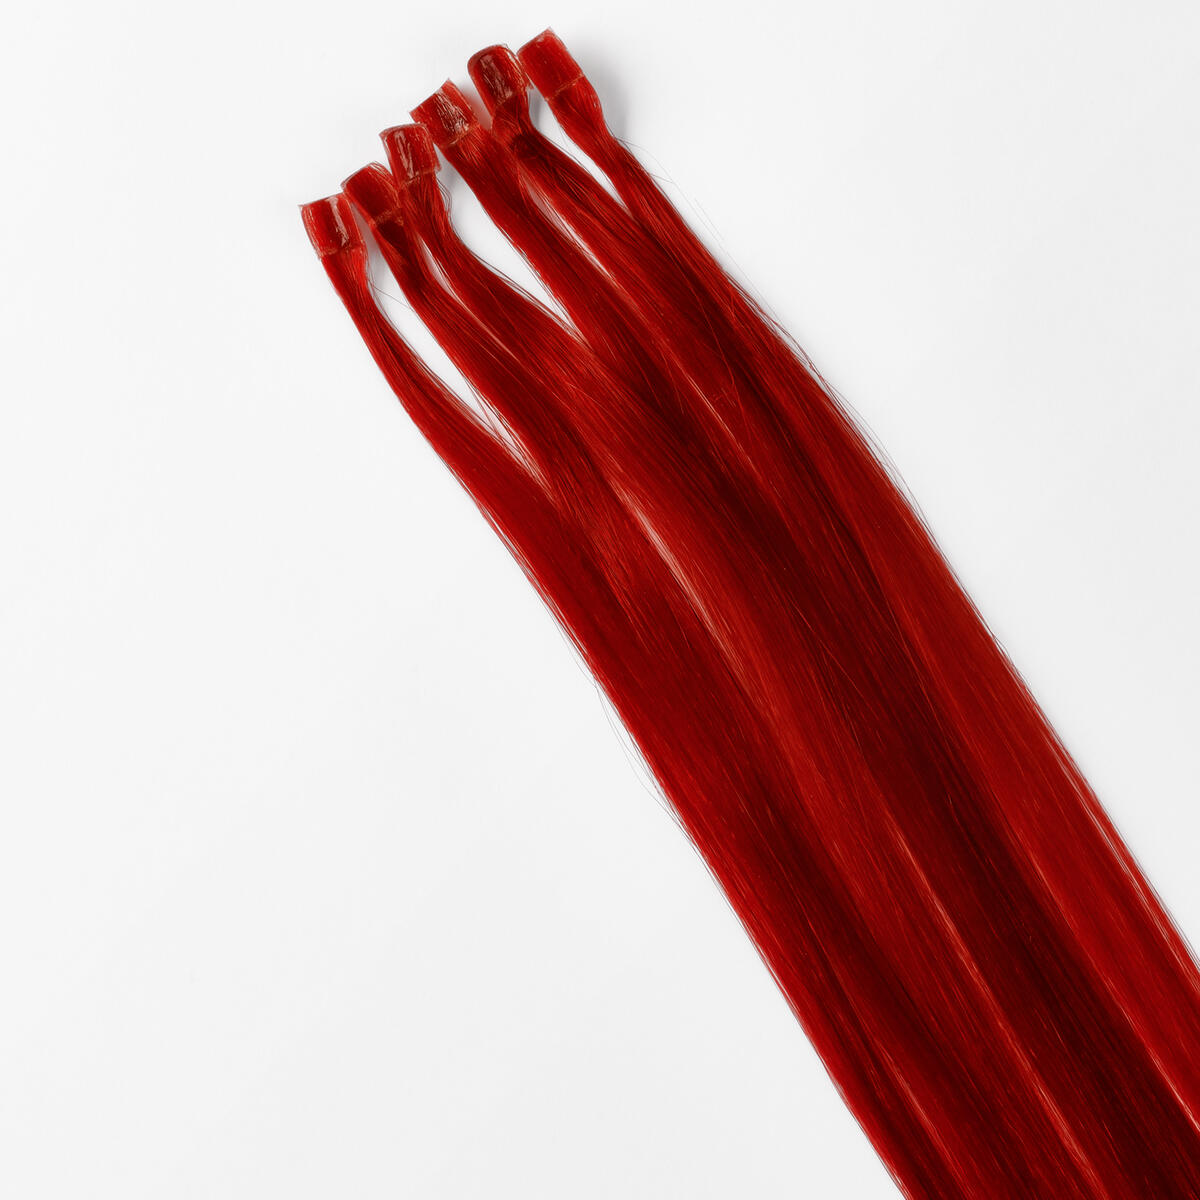 Nail Hair Premium 6.0 Red Fire 50 cm